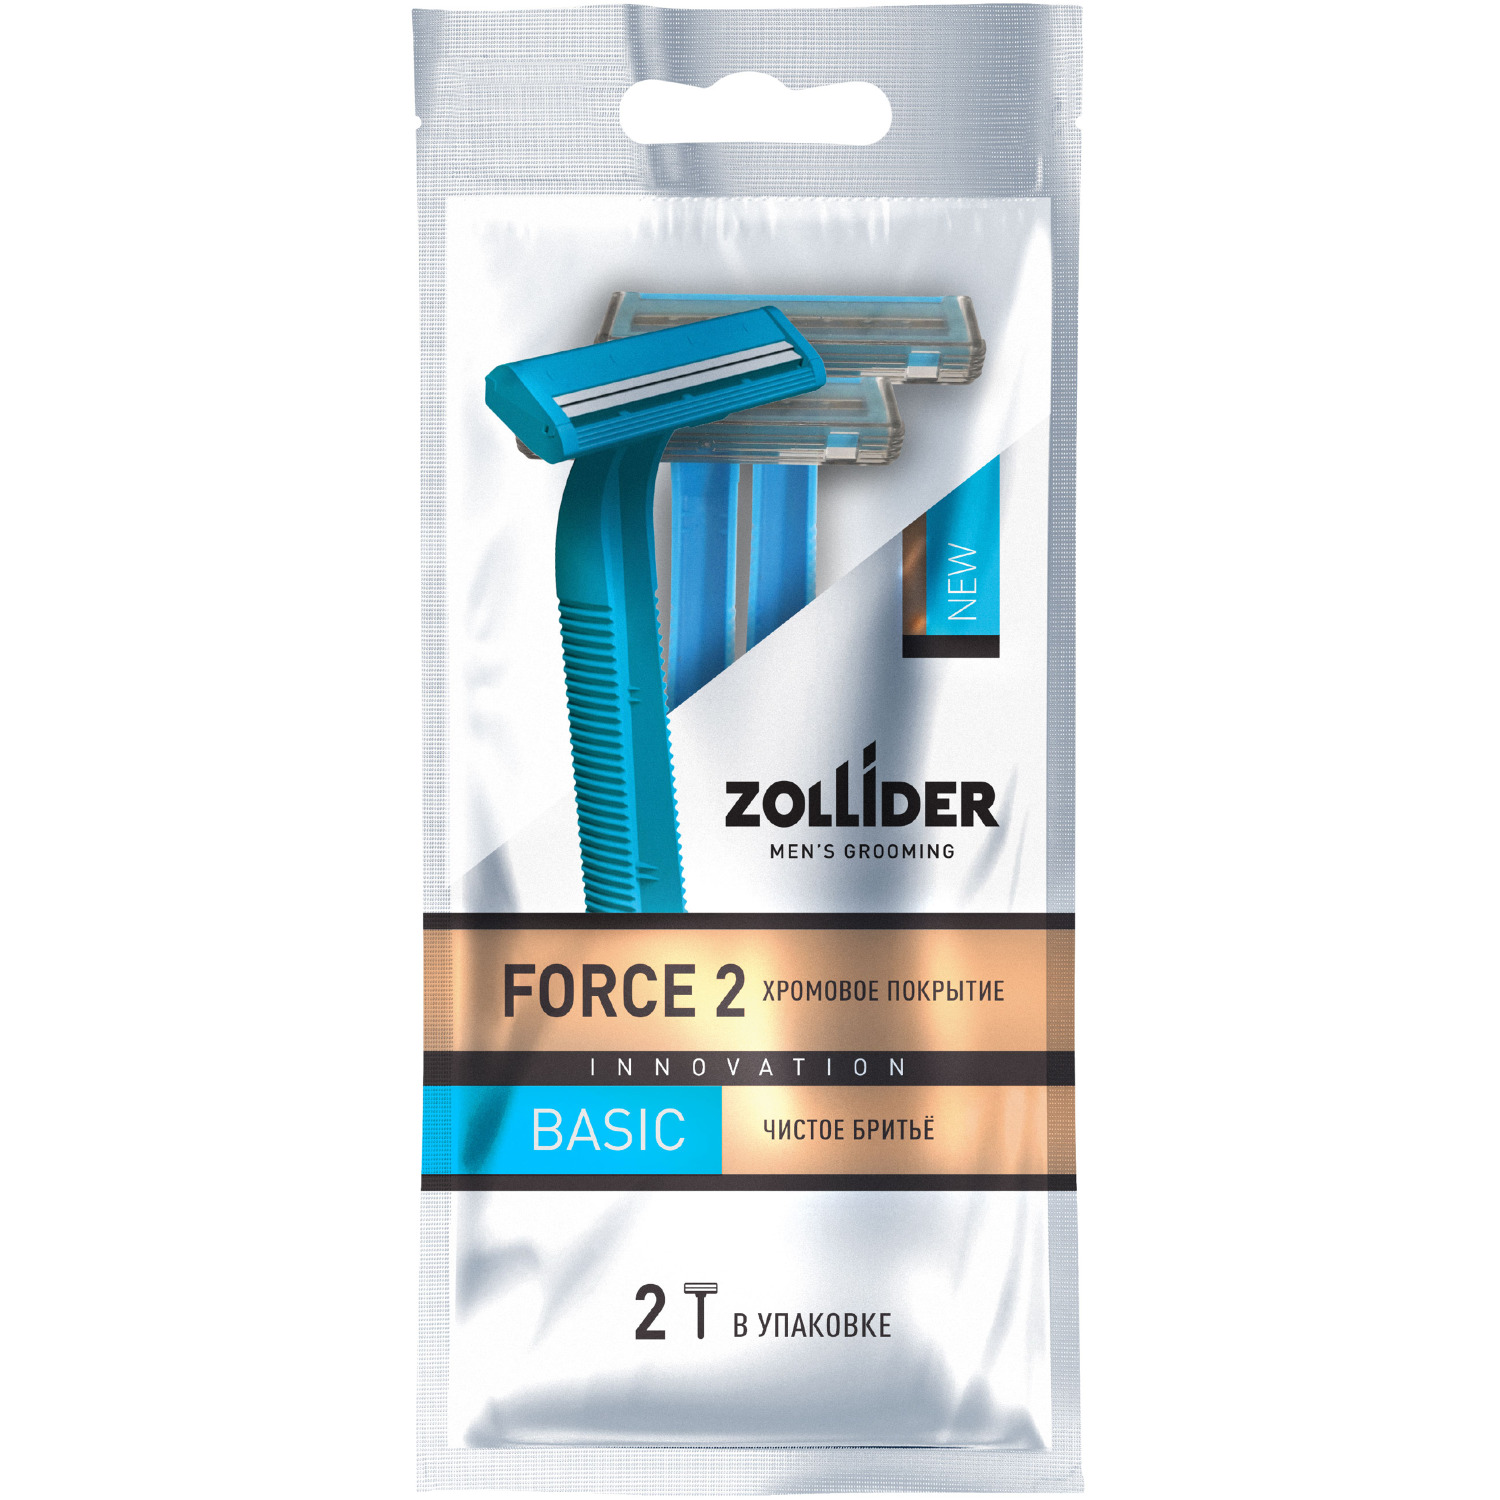 Одноразовые бритвенные станки Zollider Force 2 Basic 2 лезвия 2 шт станки одноразовые для бритья bic metal 6 шт